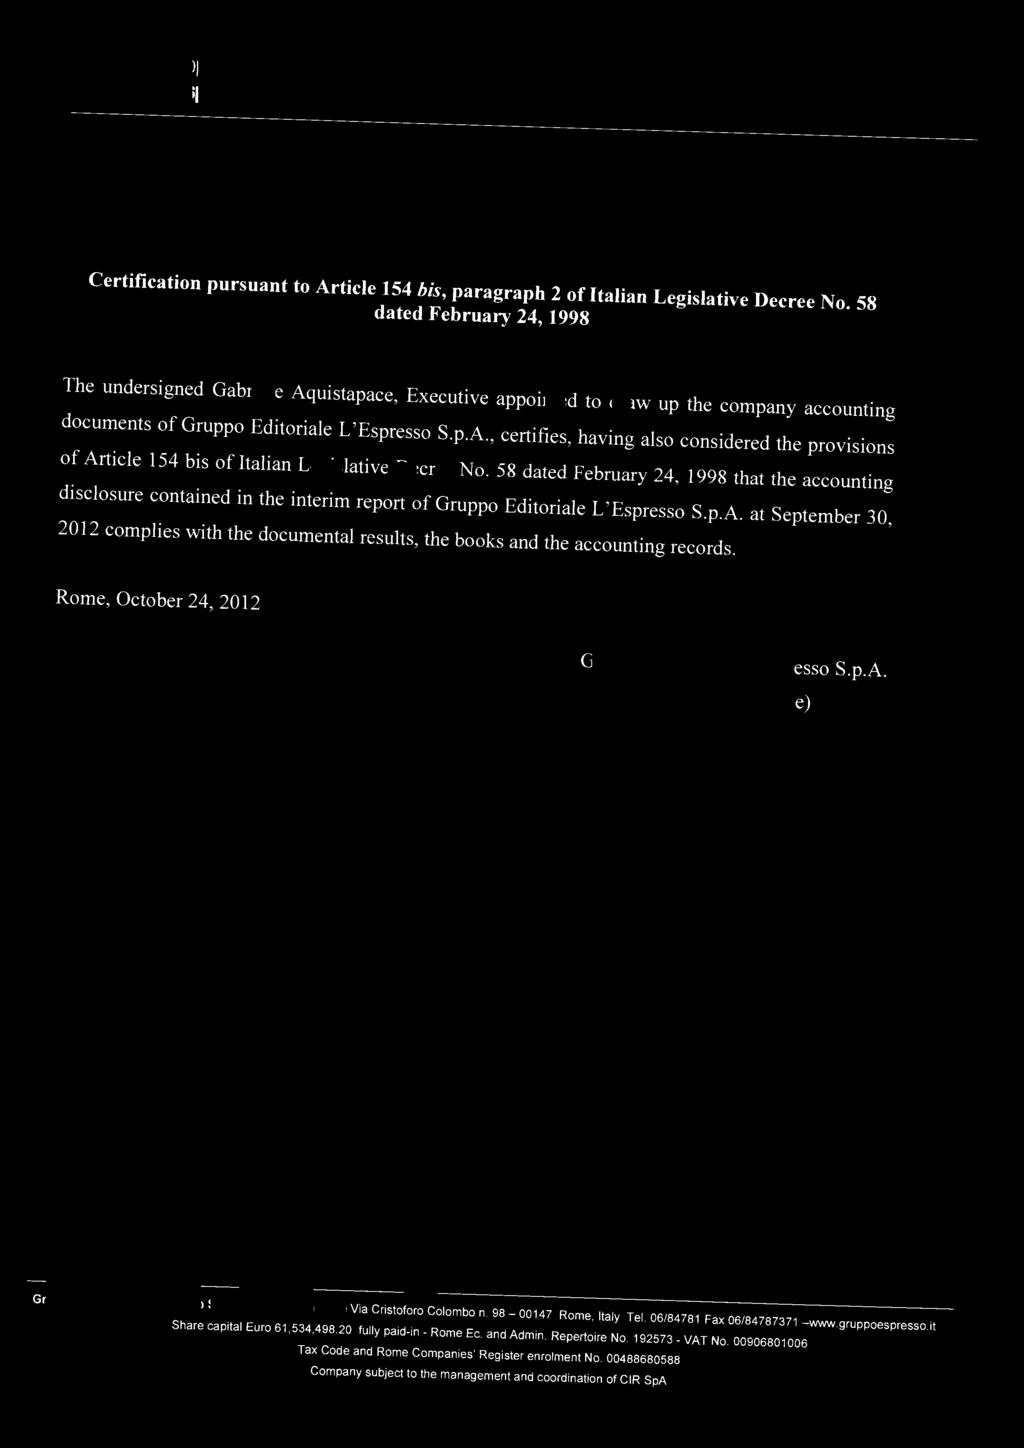 Gruppo Editoriale L'Espresso Spa Certification pursuant to Article 154 his, paragraph 2 of Italian Legislative Decree No.